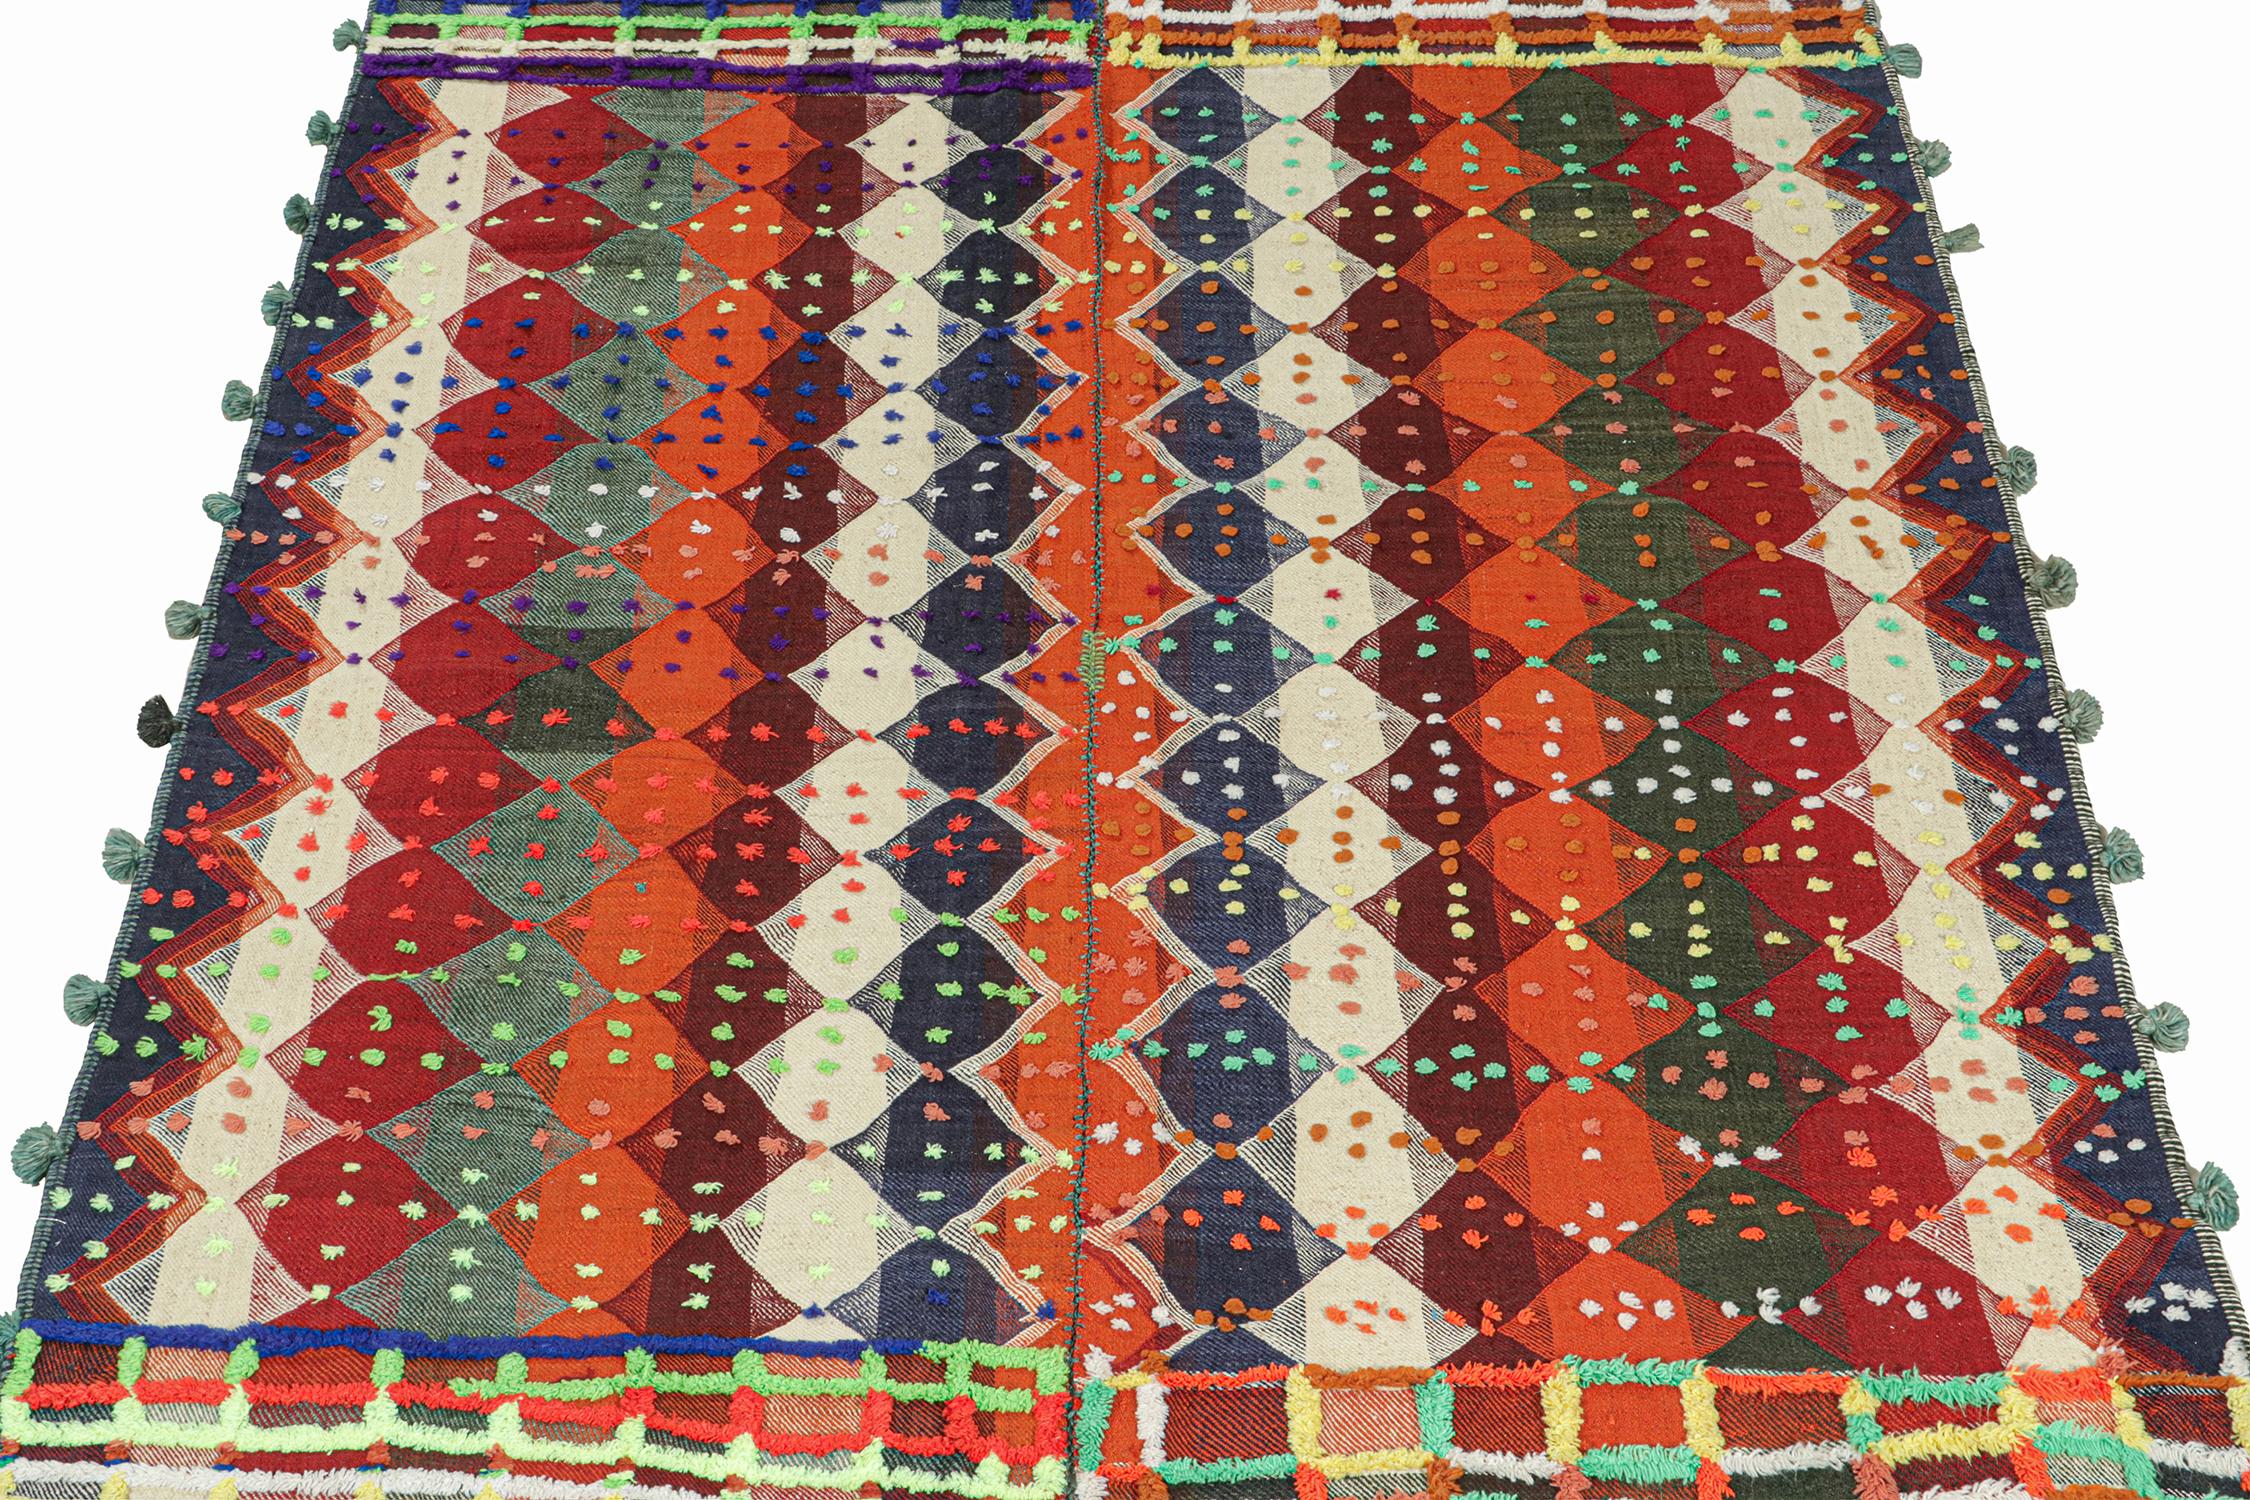 Ce tapis kilim persan vintage 6x9 est tissé à la main en laine et date d'environ 1950-1960.

Il s'agit d'un tissage en panneaux, dans lequel les tissages tribaux combinent deux ou plusieurs tissages plats en une pièce plus grande. Cette pièce